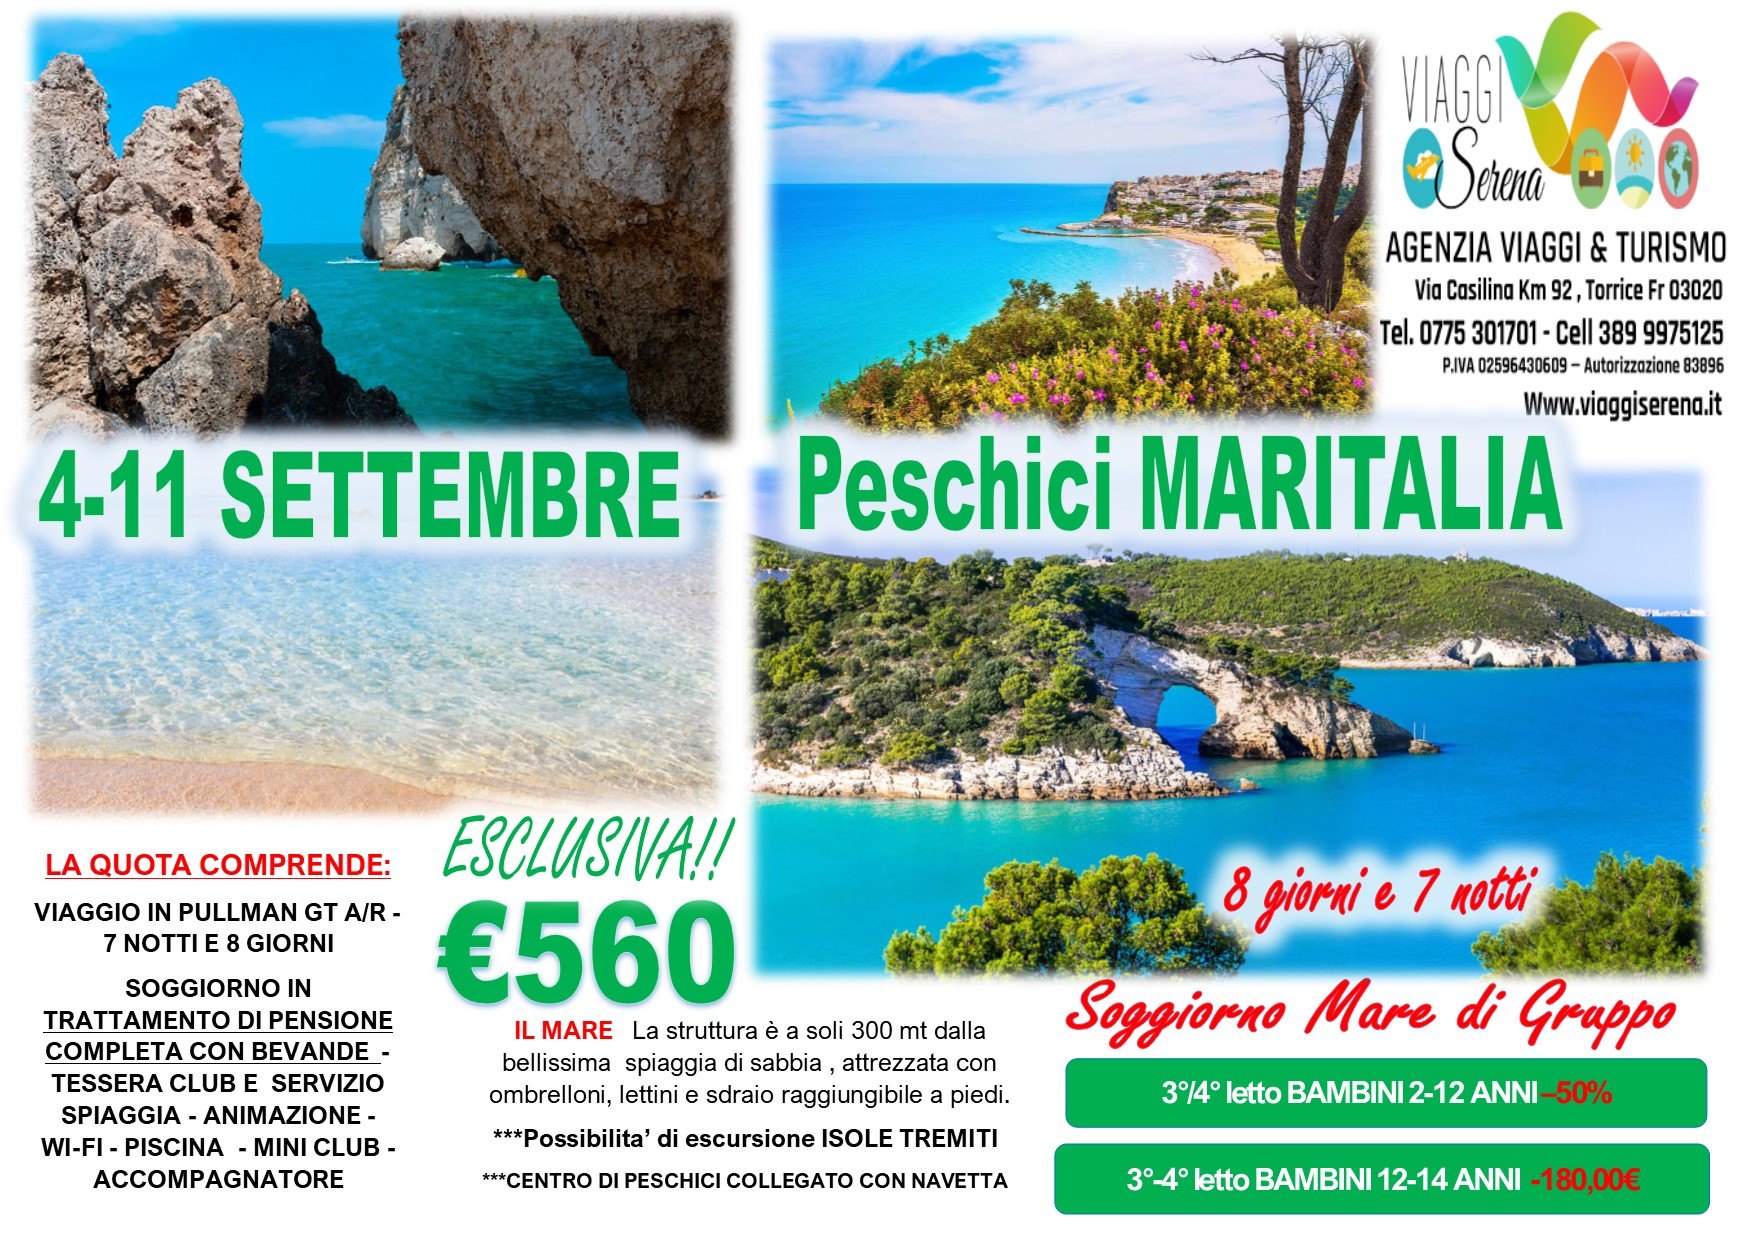 Viaggi di Gruppo: Soggiorno Mare Peschici “disponibilita’ limitata” 4-11 Settembre €560,00